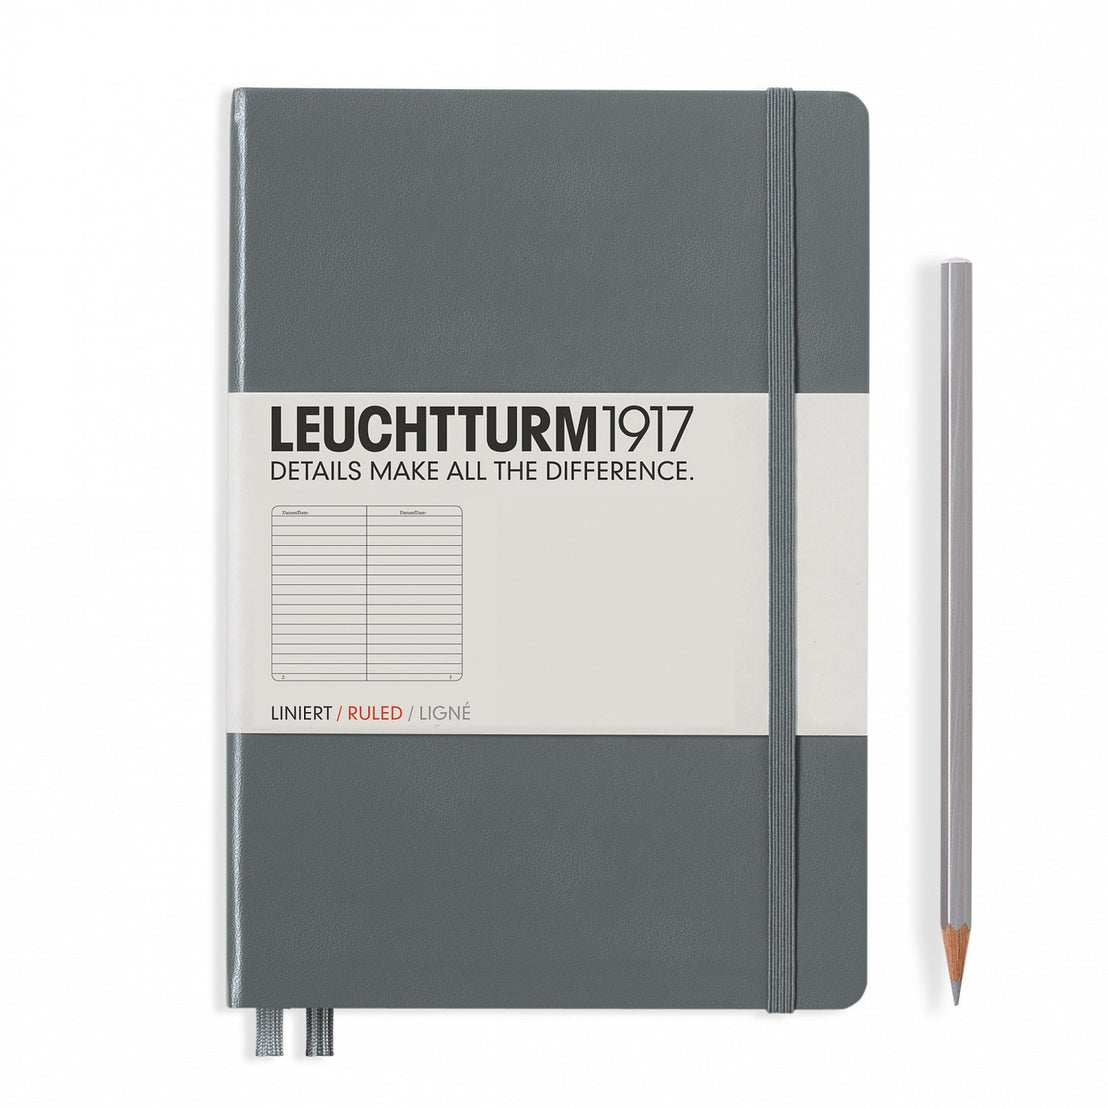 A5 Ruled Hardcover Notebook, Leuchtturm1917